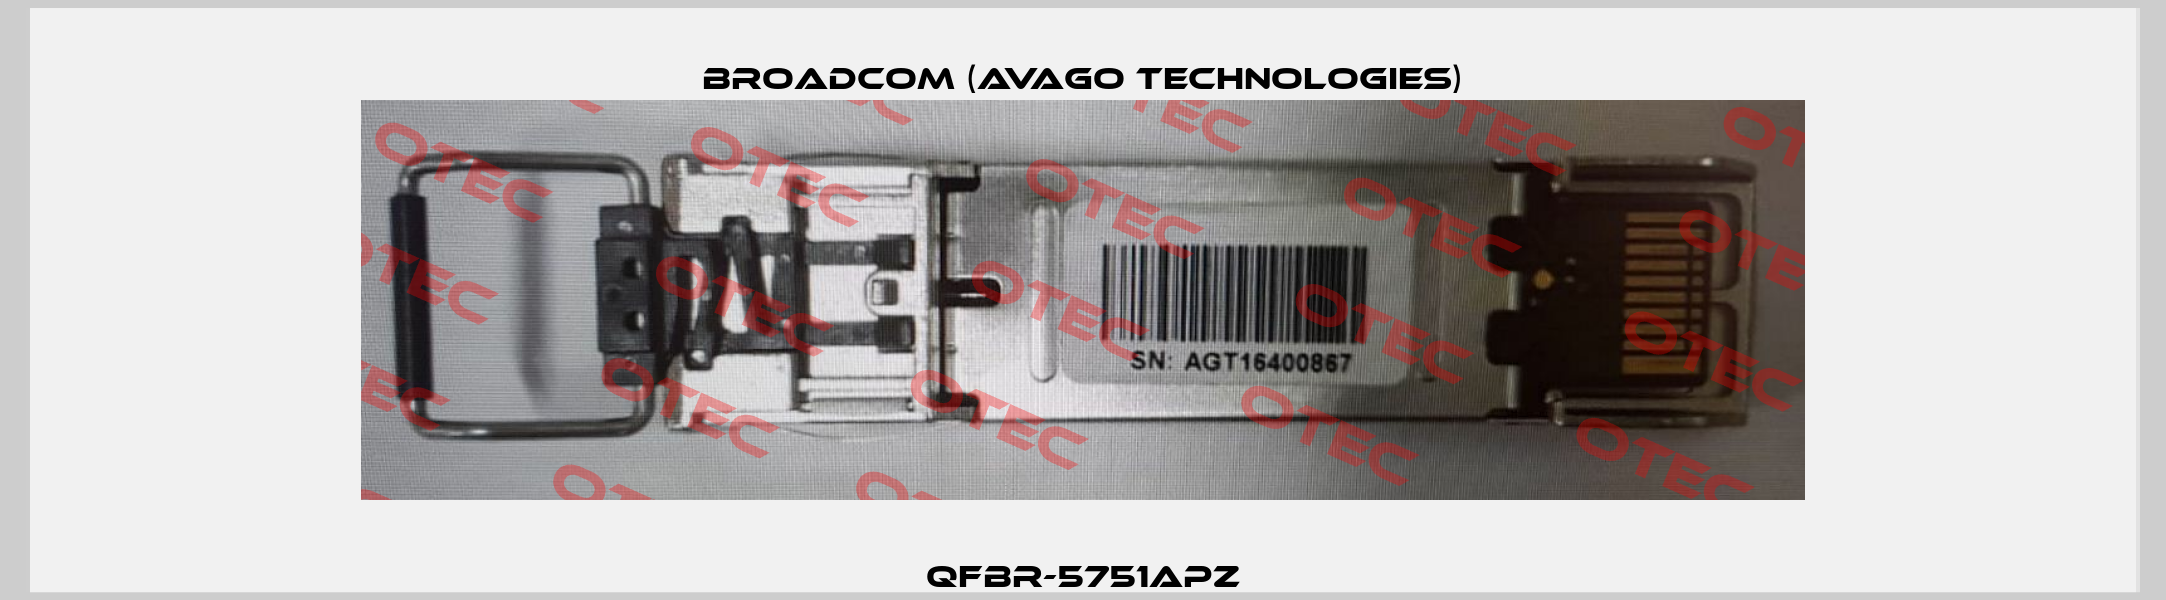 QFBR-5751APZ Broadcom (Avago Technologies)